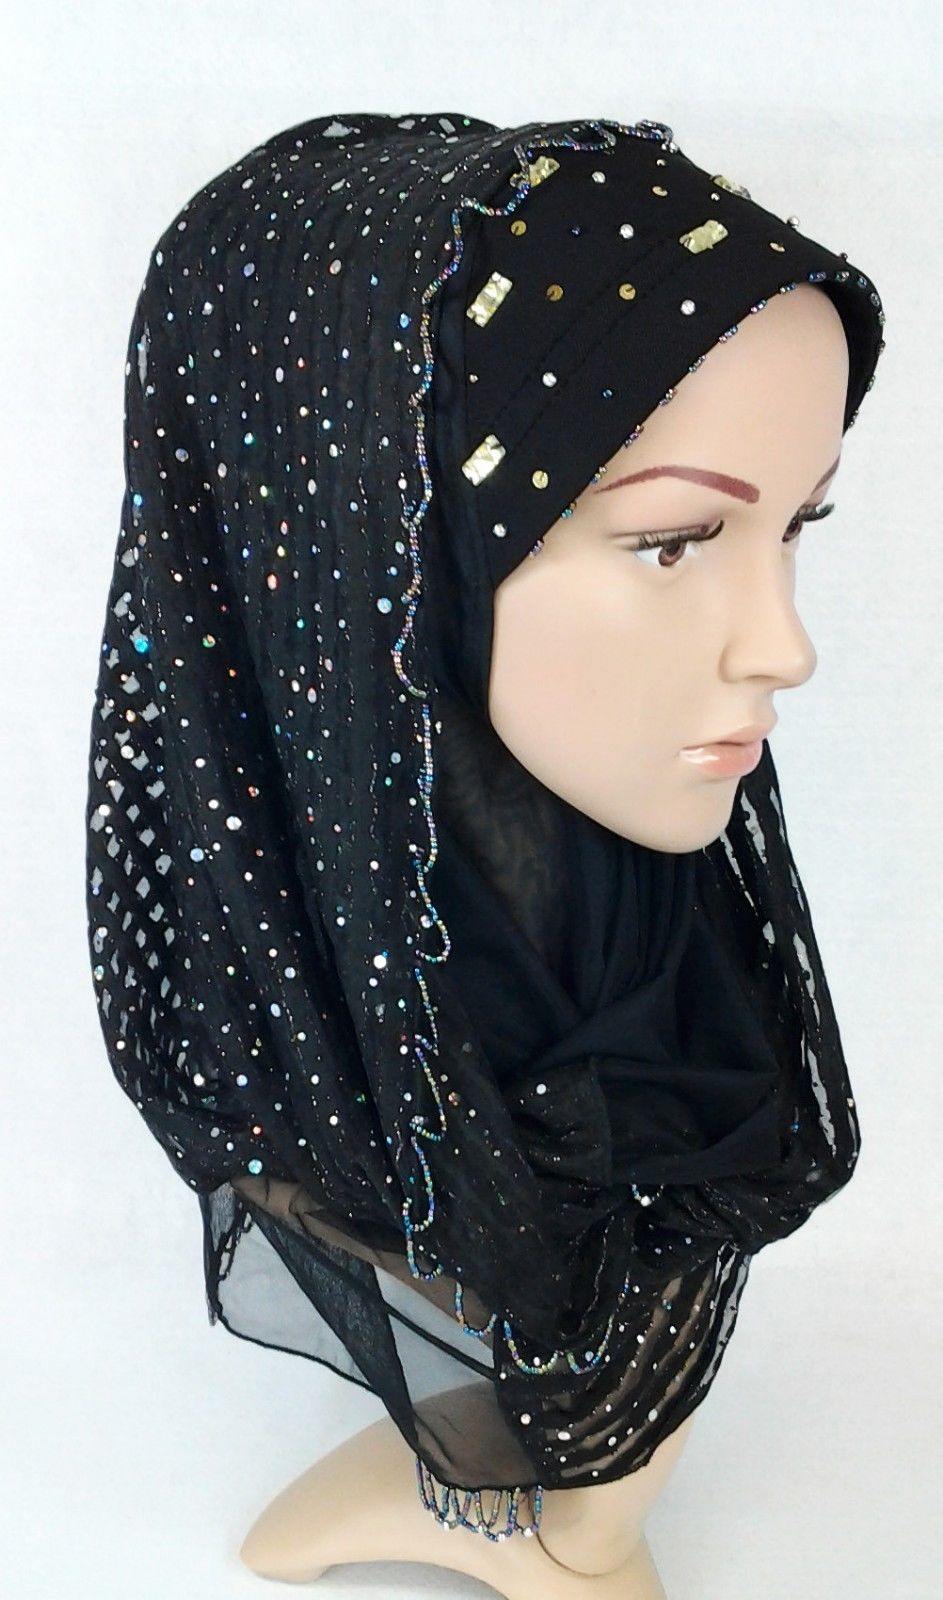 New Lace NET Yarn RhineStone Summer Hijab Islamic Cap Headwear Scarf Shawls - Arabian Shopping Zone